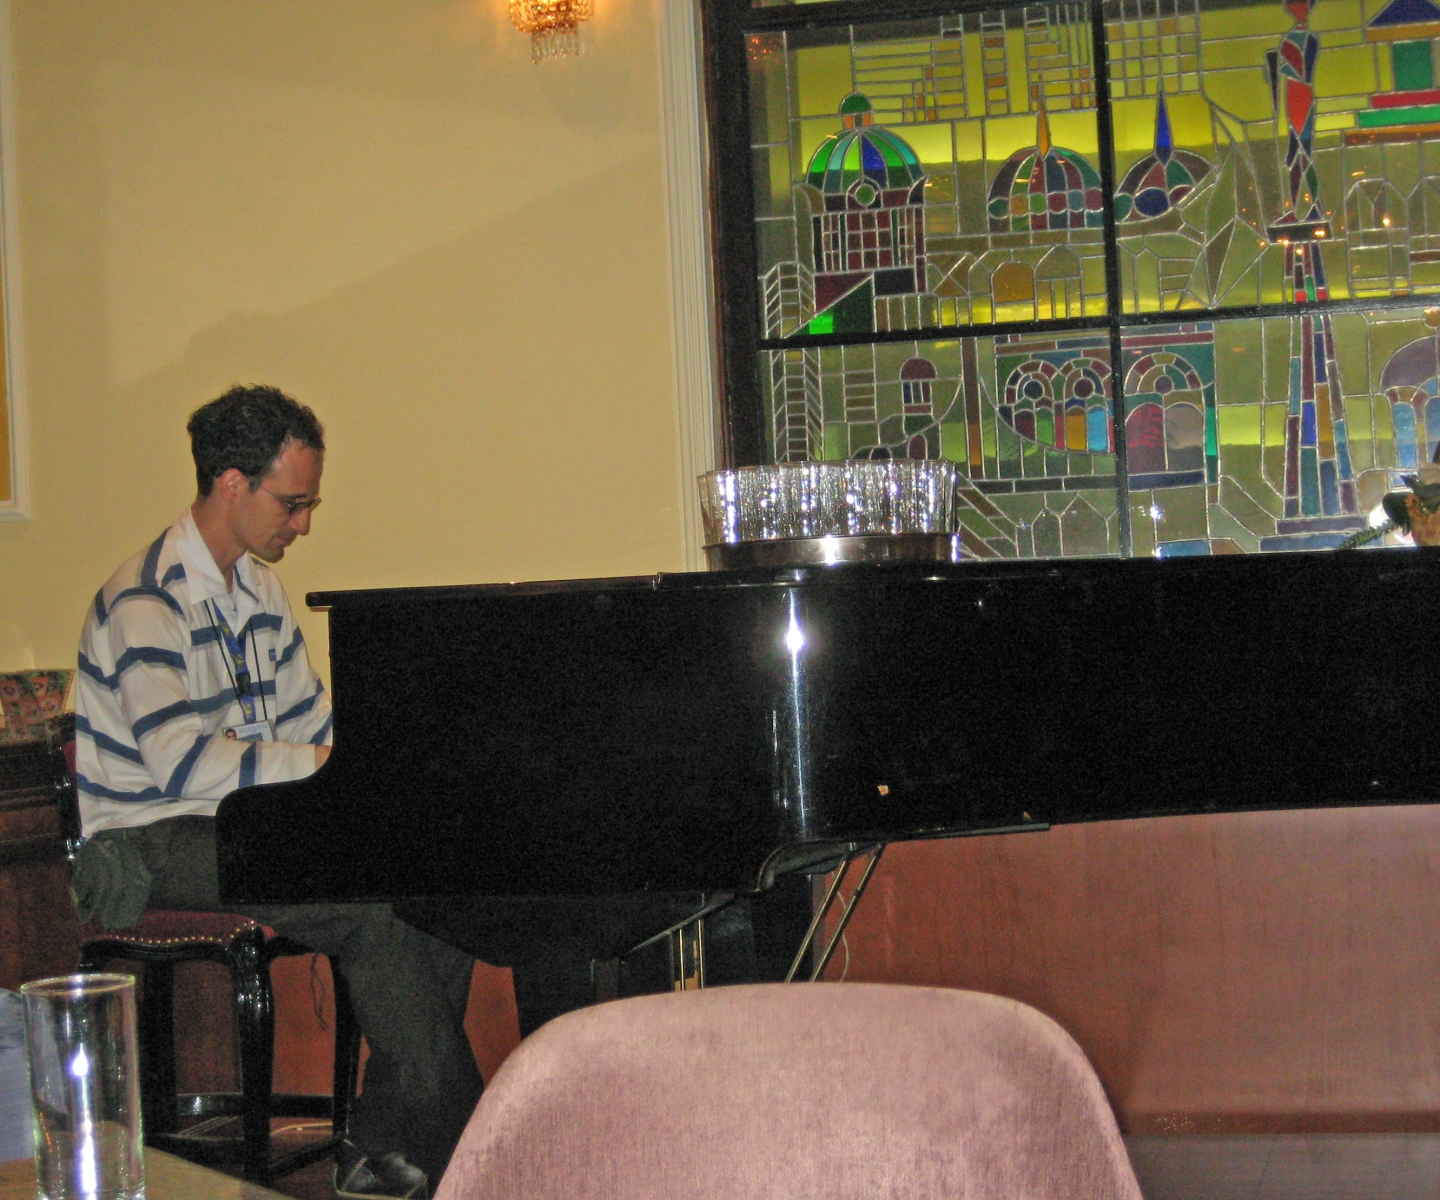 Piano player inside The Majestic, Belgrade, Serbia